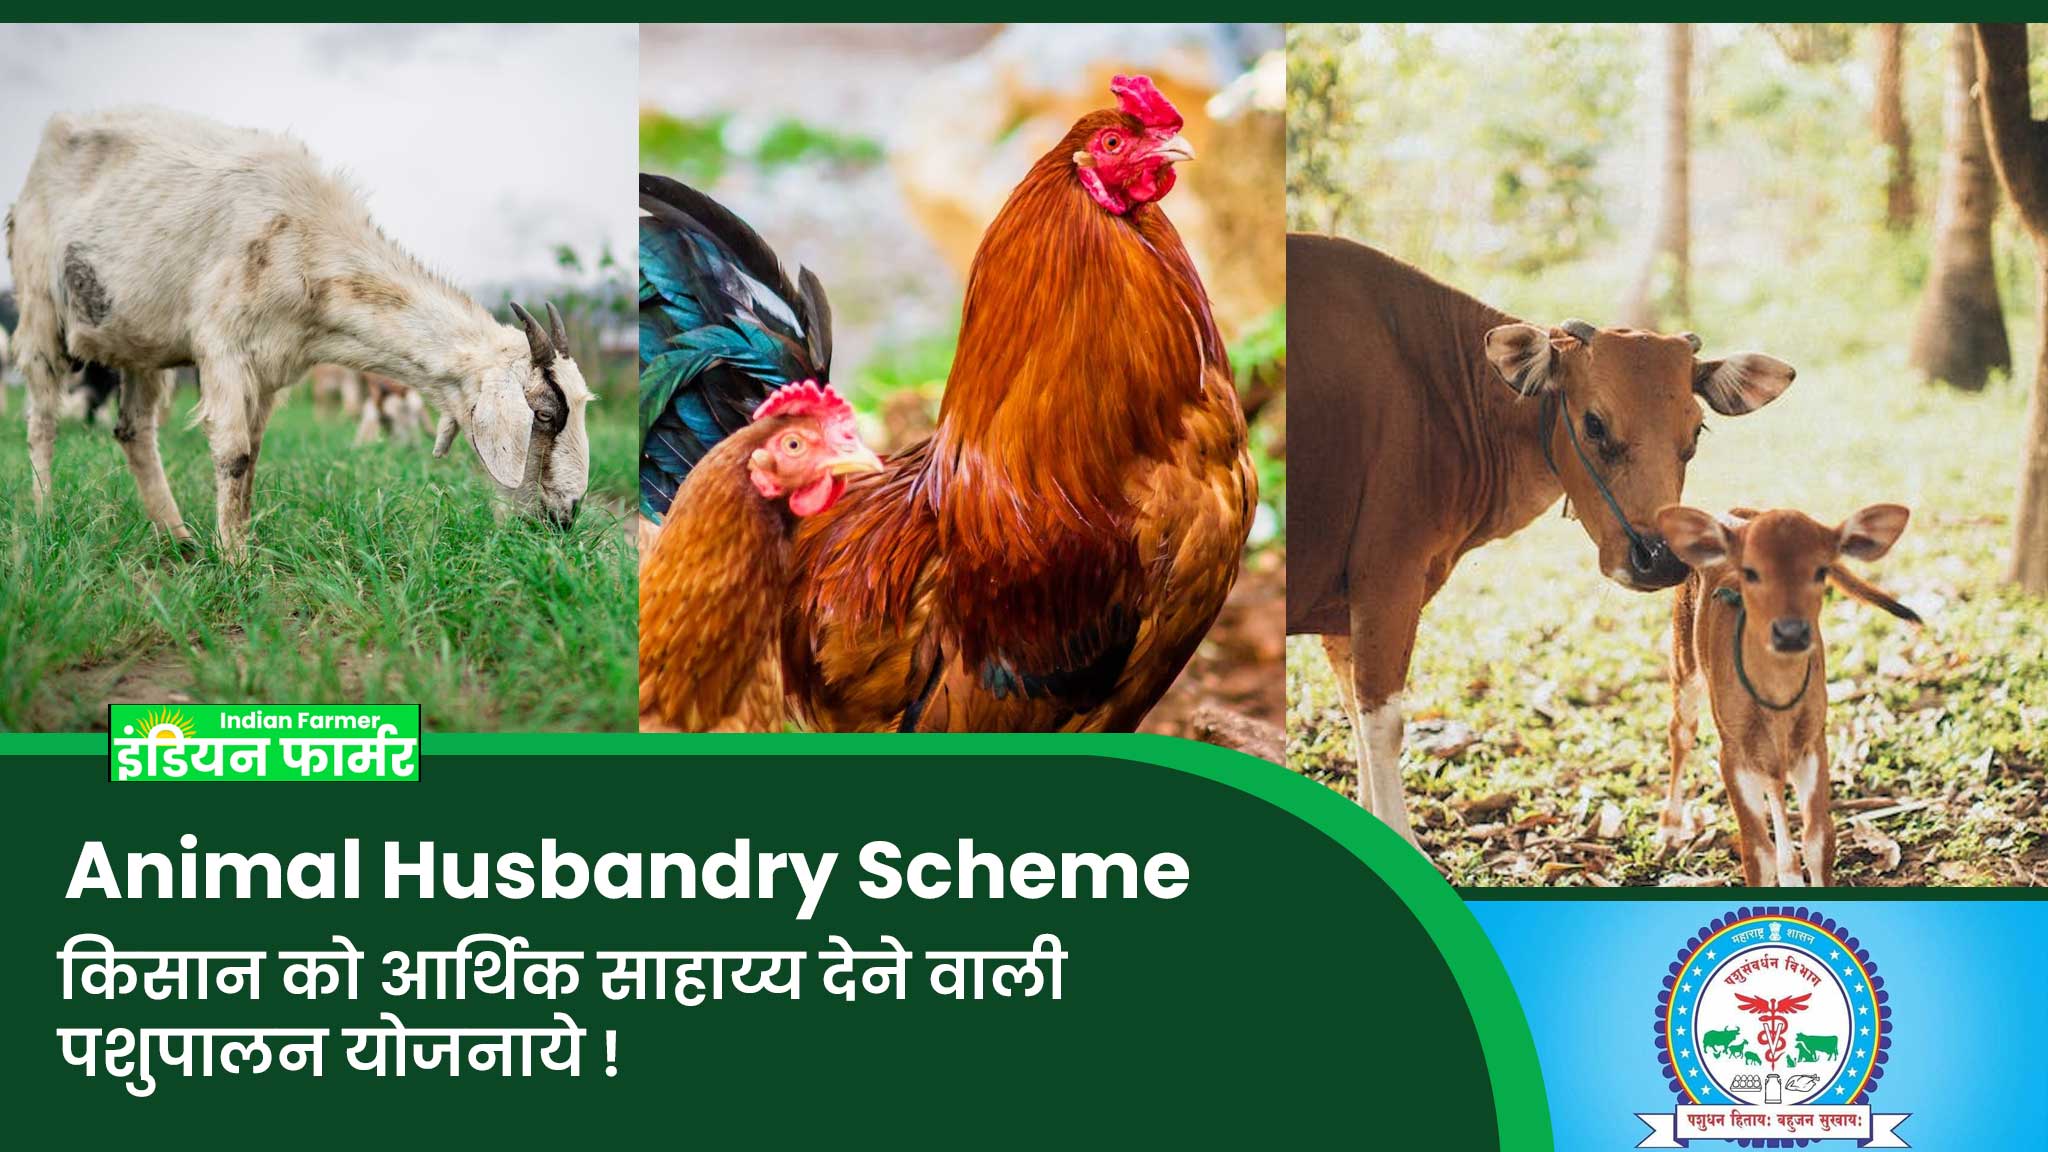 Animal Husbandry Scheme : किसान को आर्थिक साहाय्य देने वाली पशुपालन योजनाये !